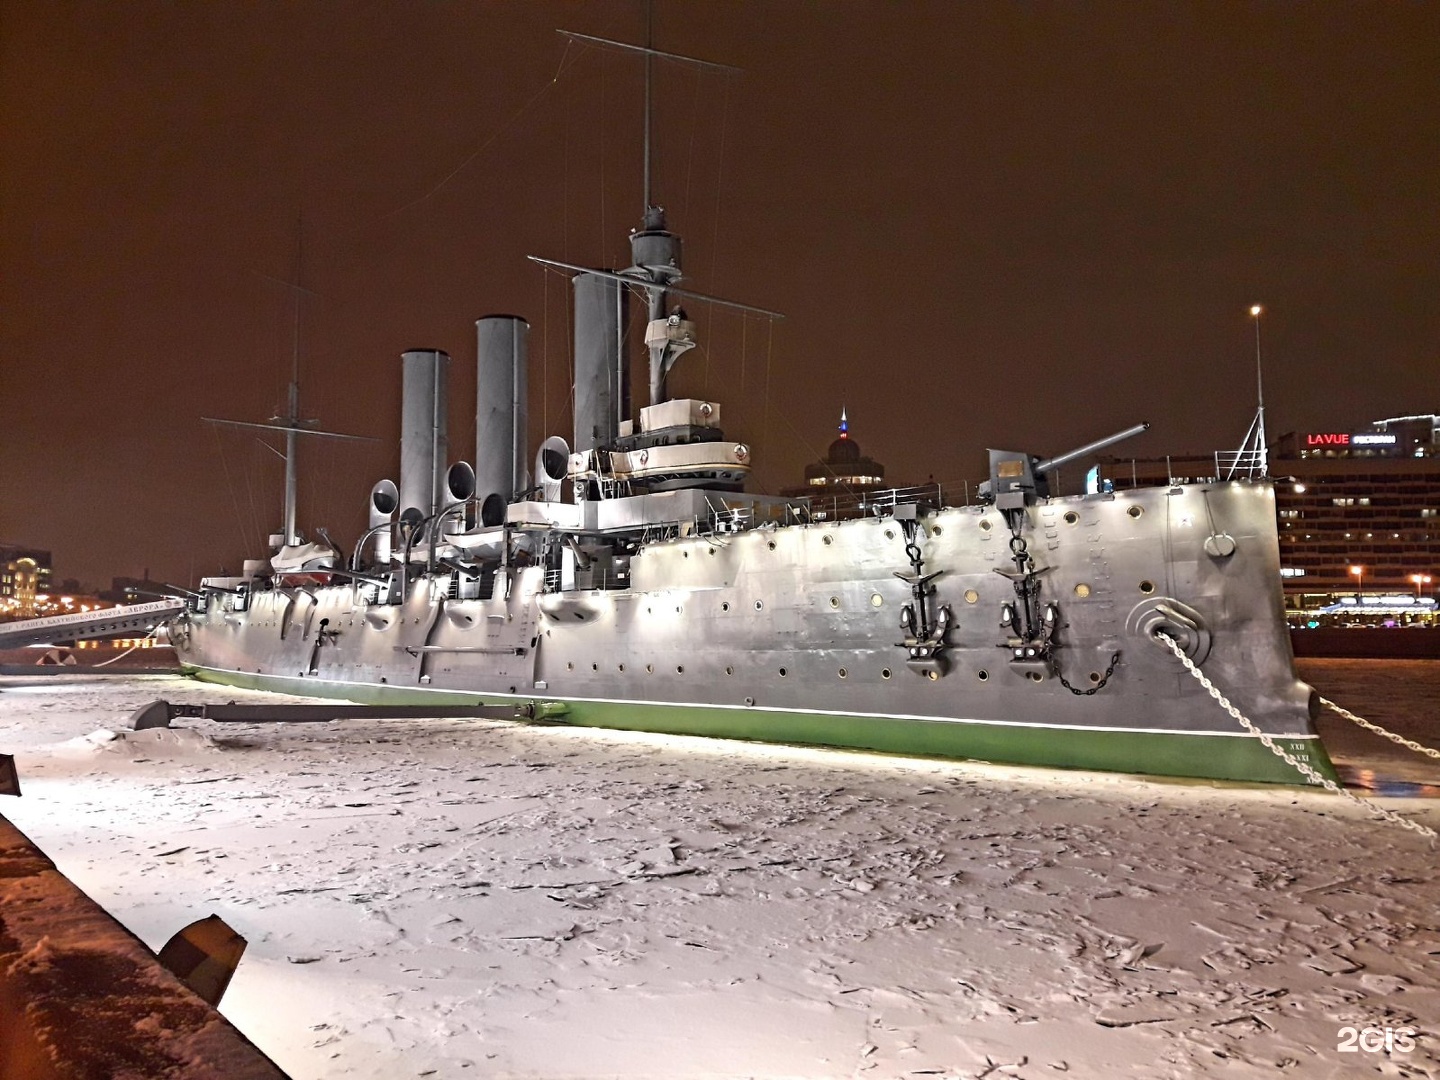 крейсер аврора в санкт петербурге внутри